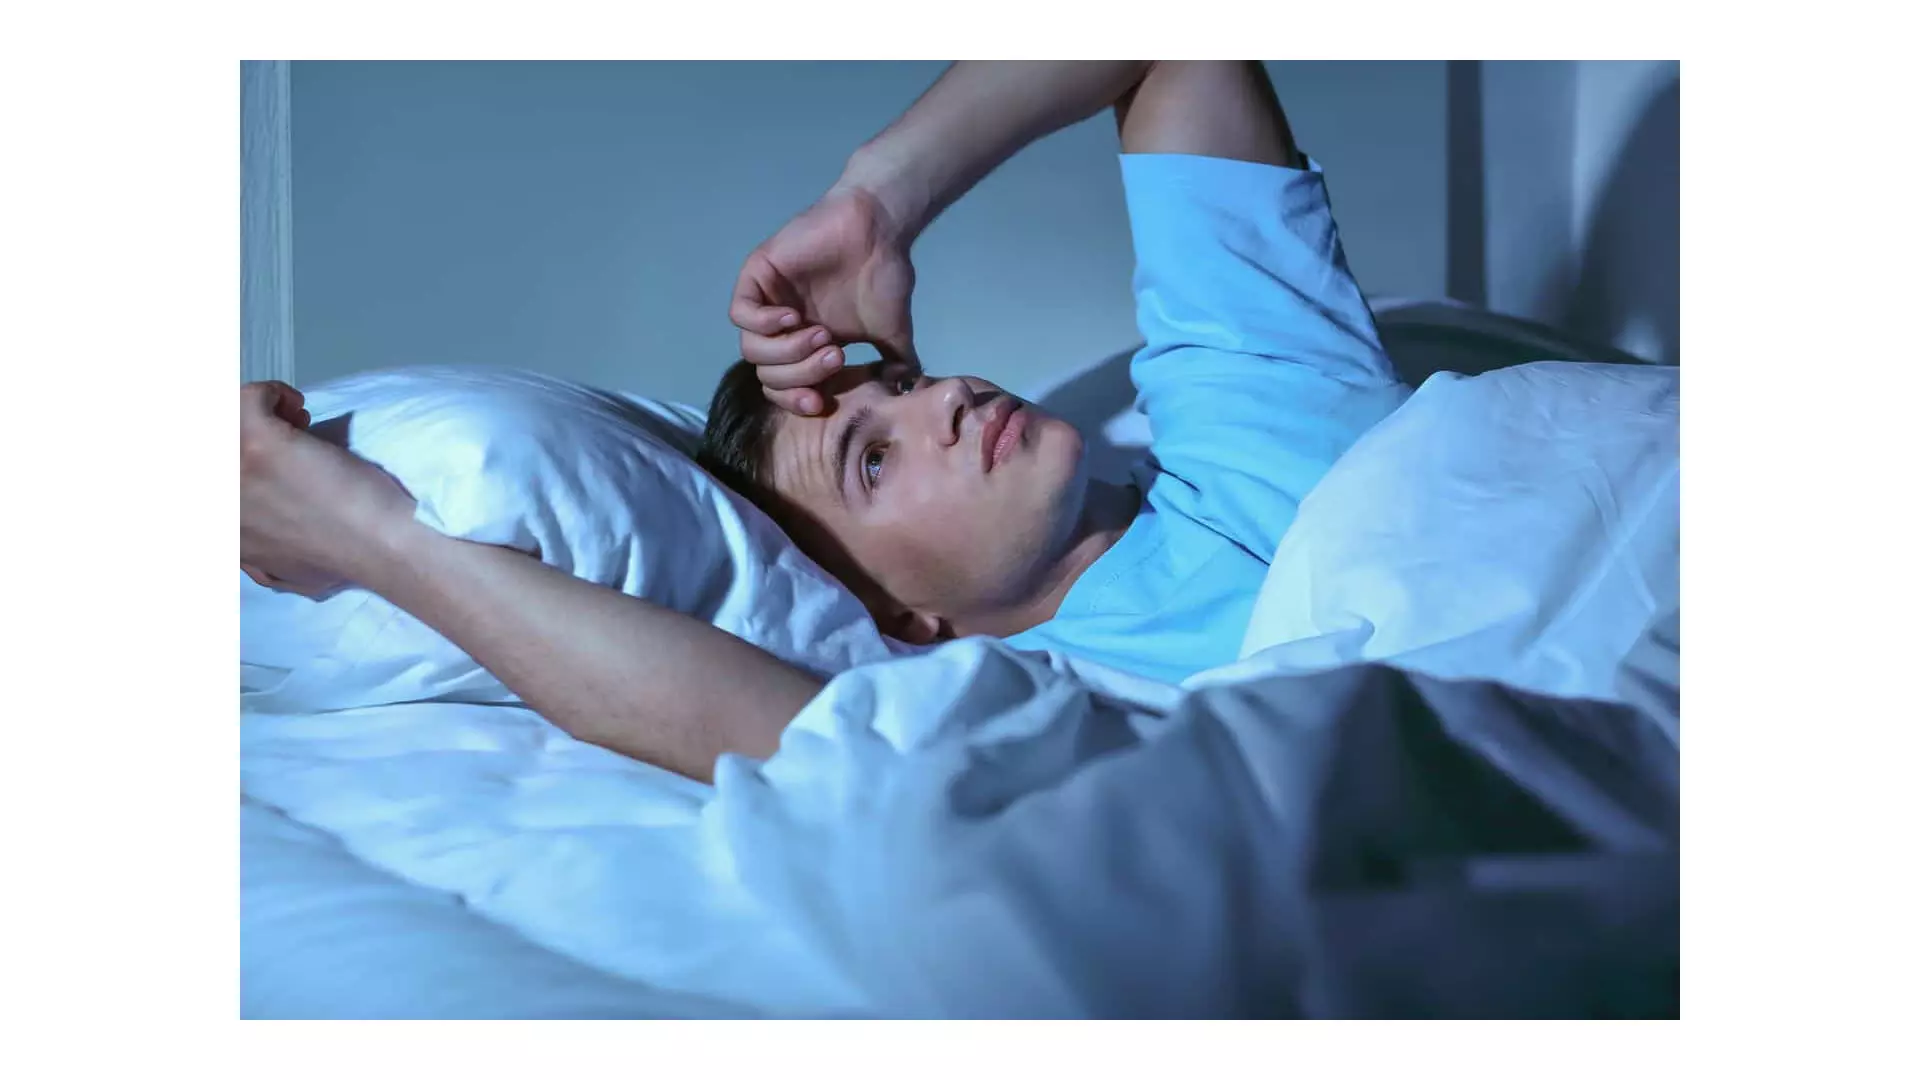 रक्त परीक्षण नींद की कमी का पता लगाता है? नया अध्ययन कुछ अंतर्दृष्टि प्रदान करता है